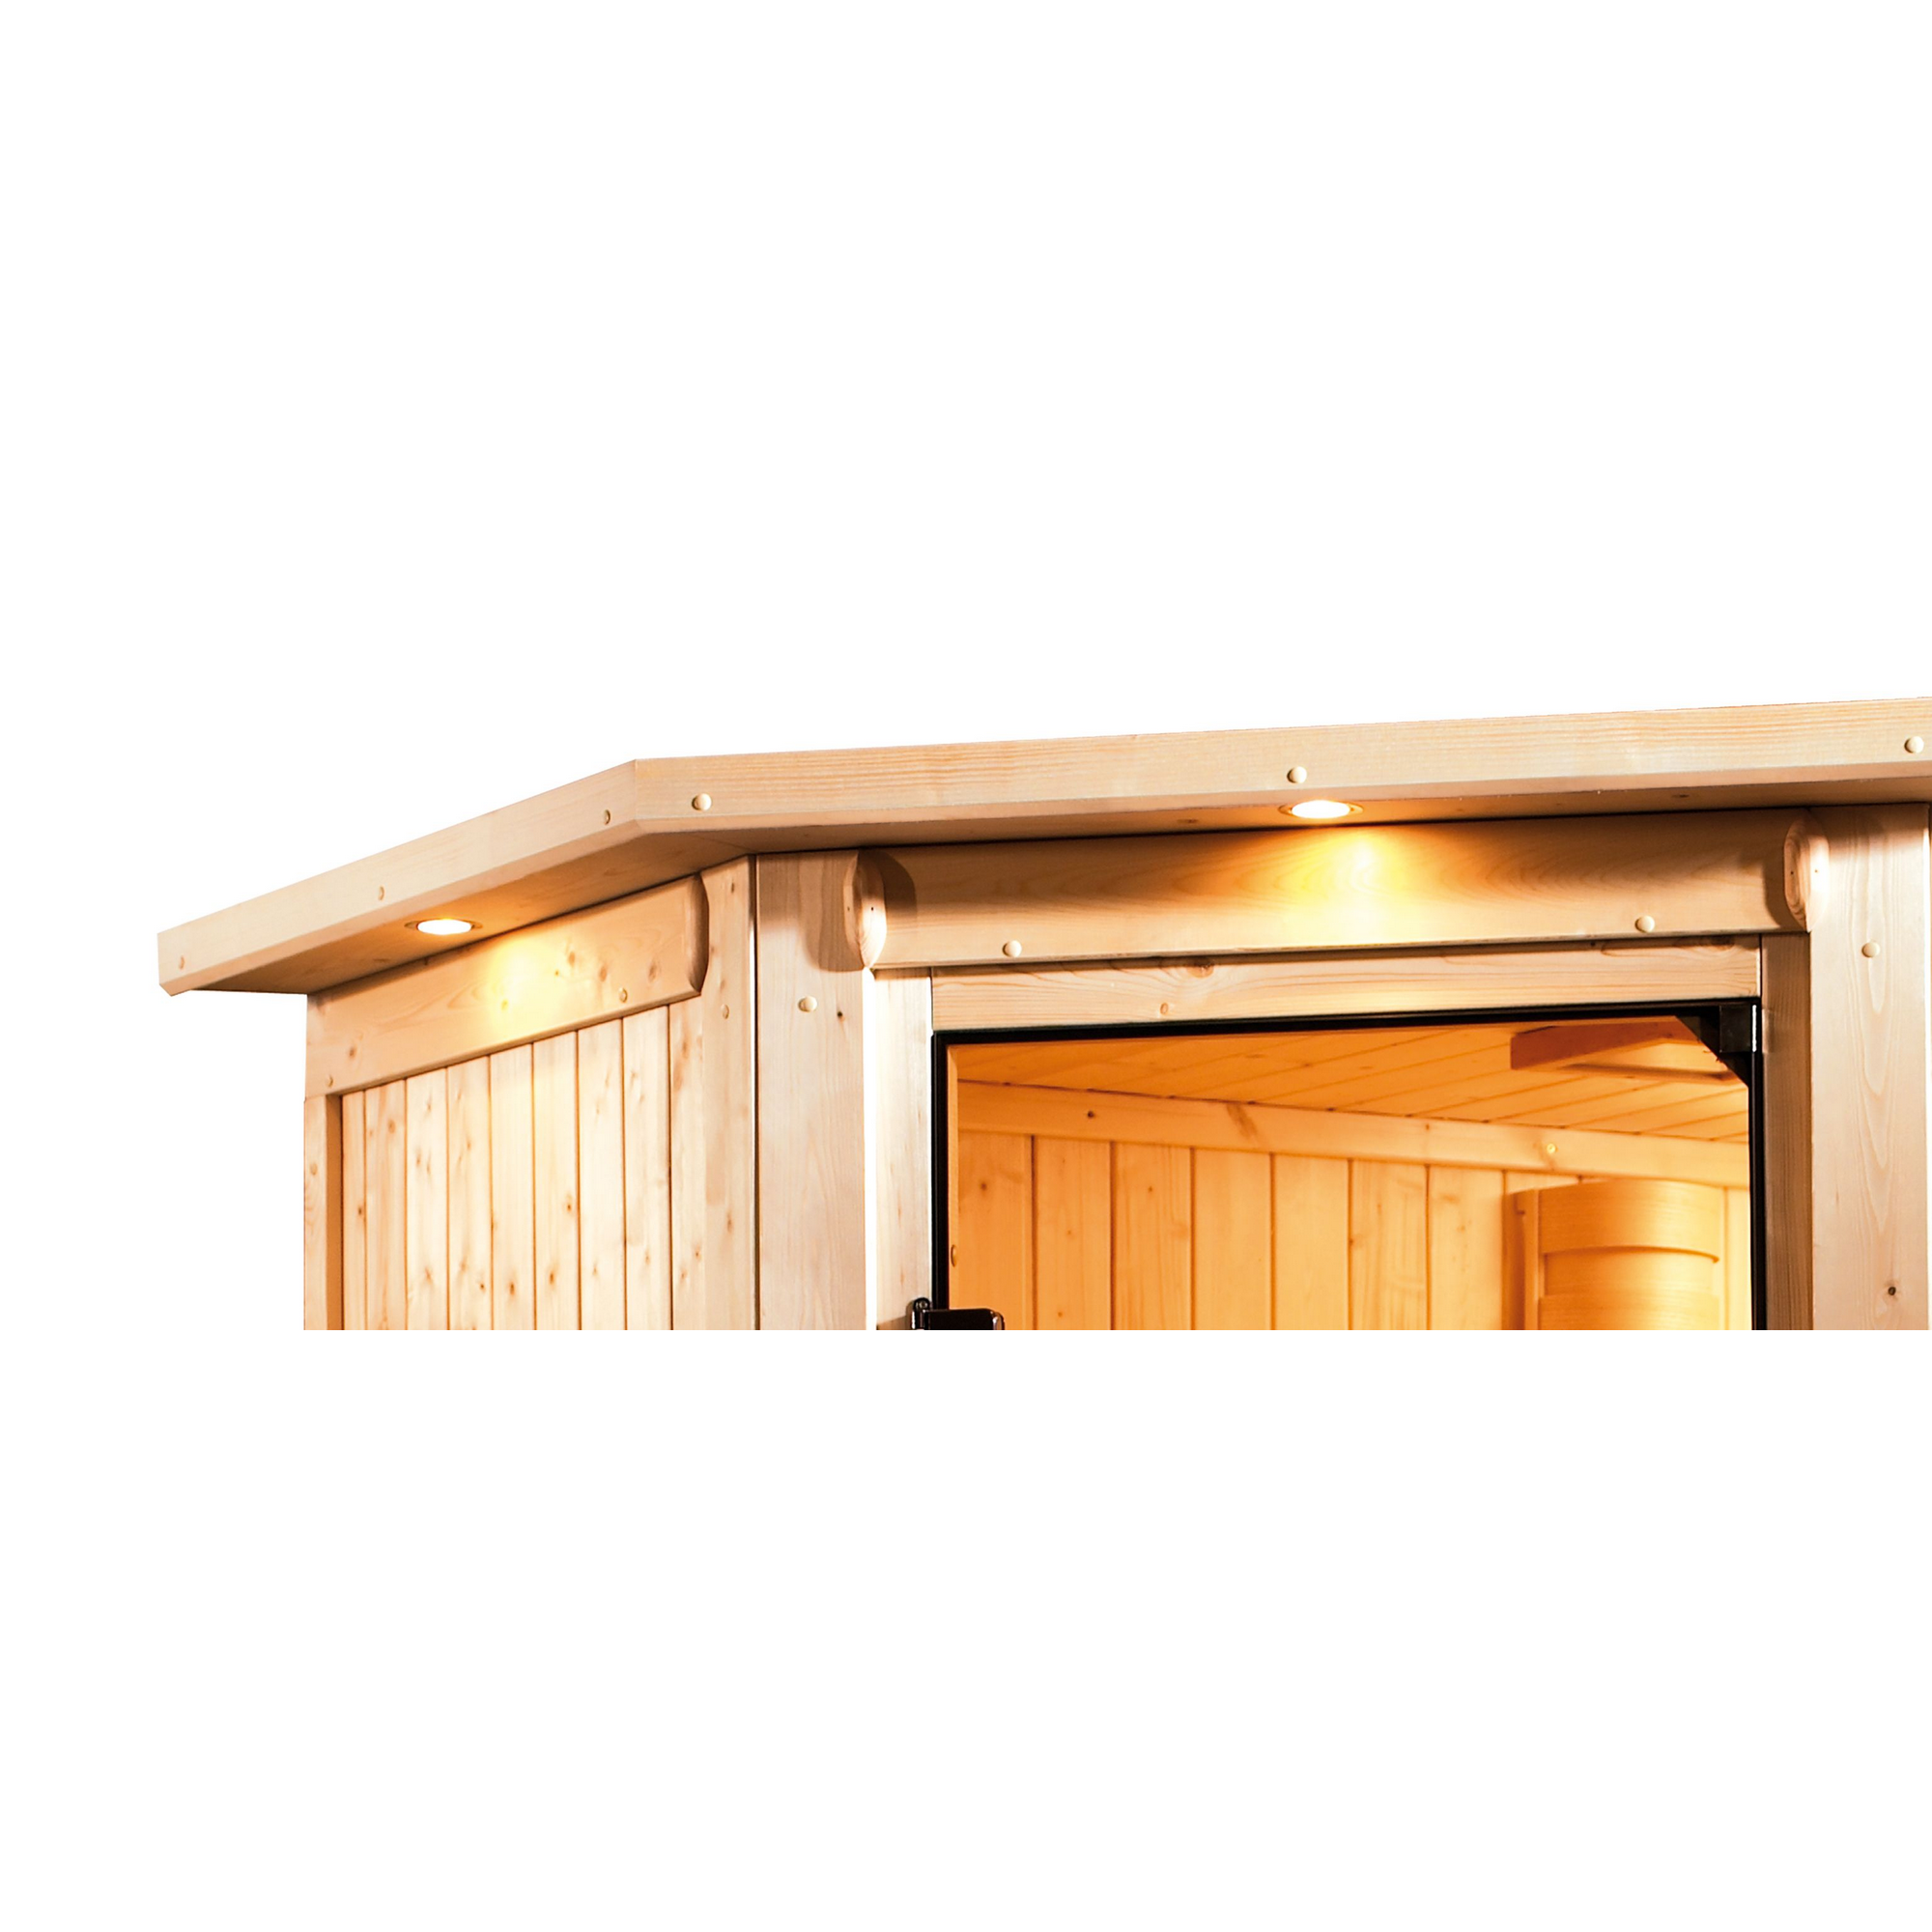 Massivholzsauna 'Dalia' naturbelassen mit Kranz und bronzierter Tür 9 kW Ofen externe Steuerung 173 x 159 x 191 cm + product picture